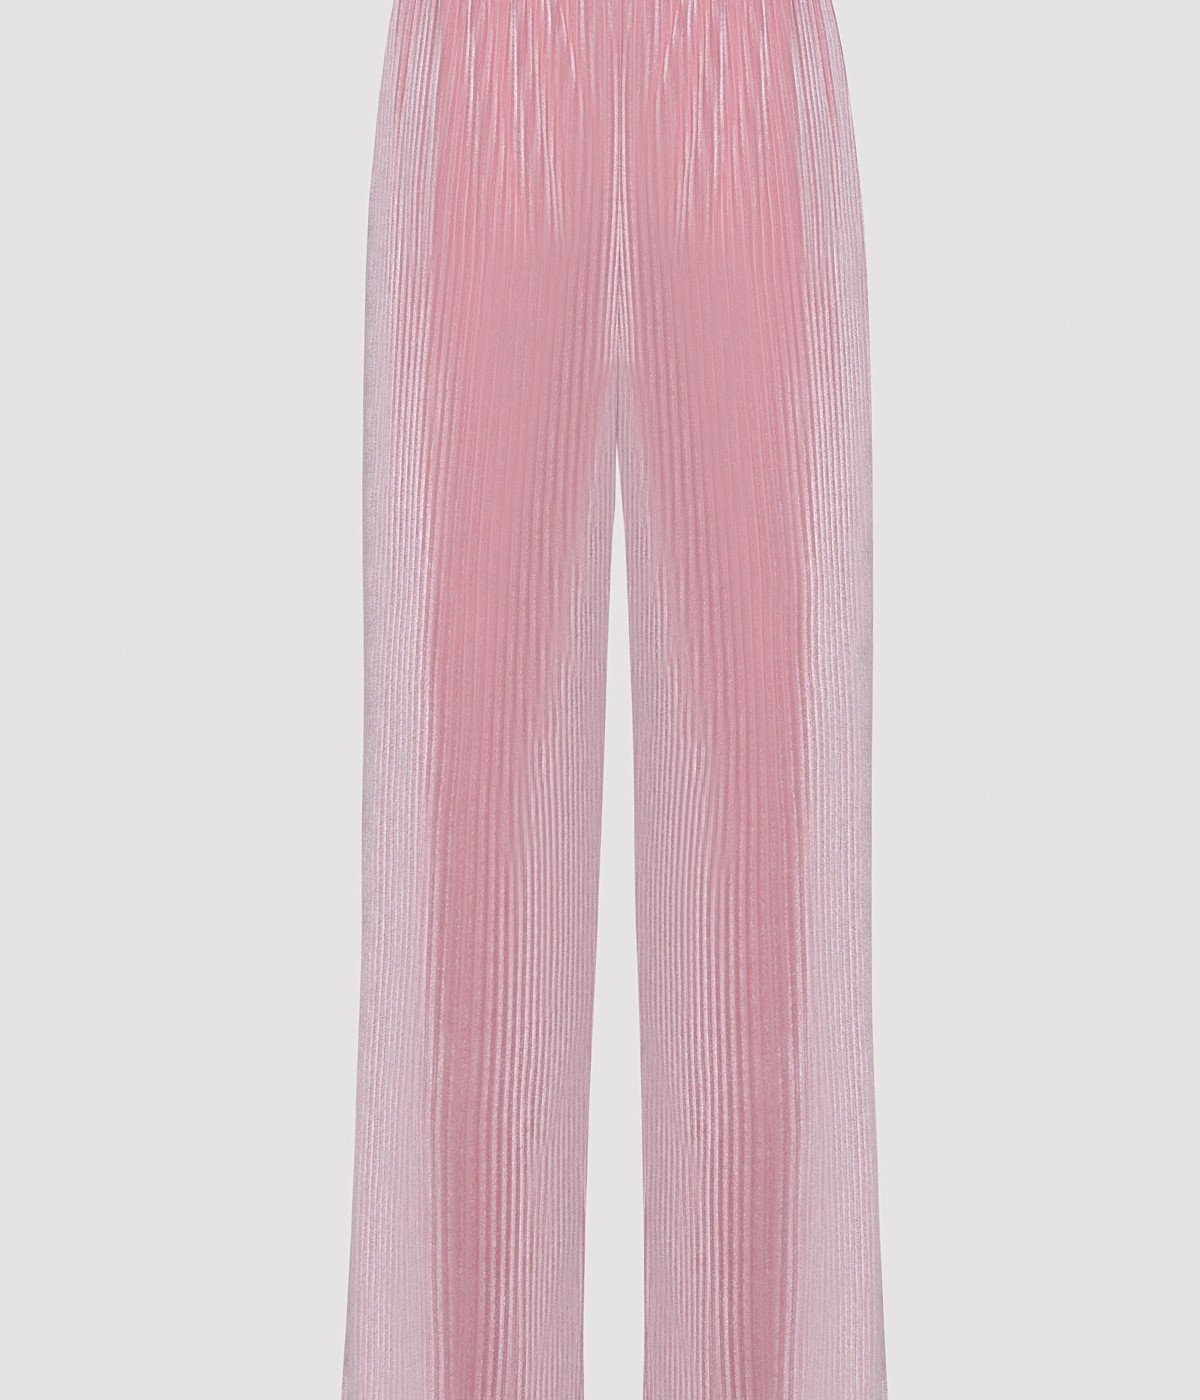 Aurora Velvet Pink Pant PJ Bottom